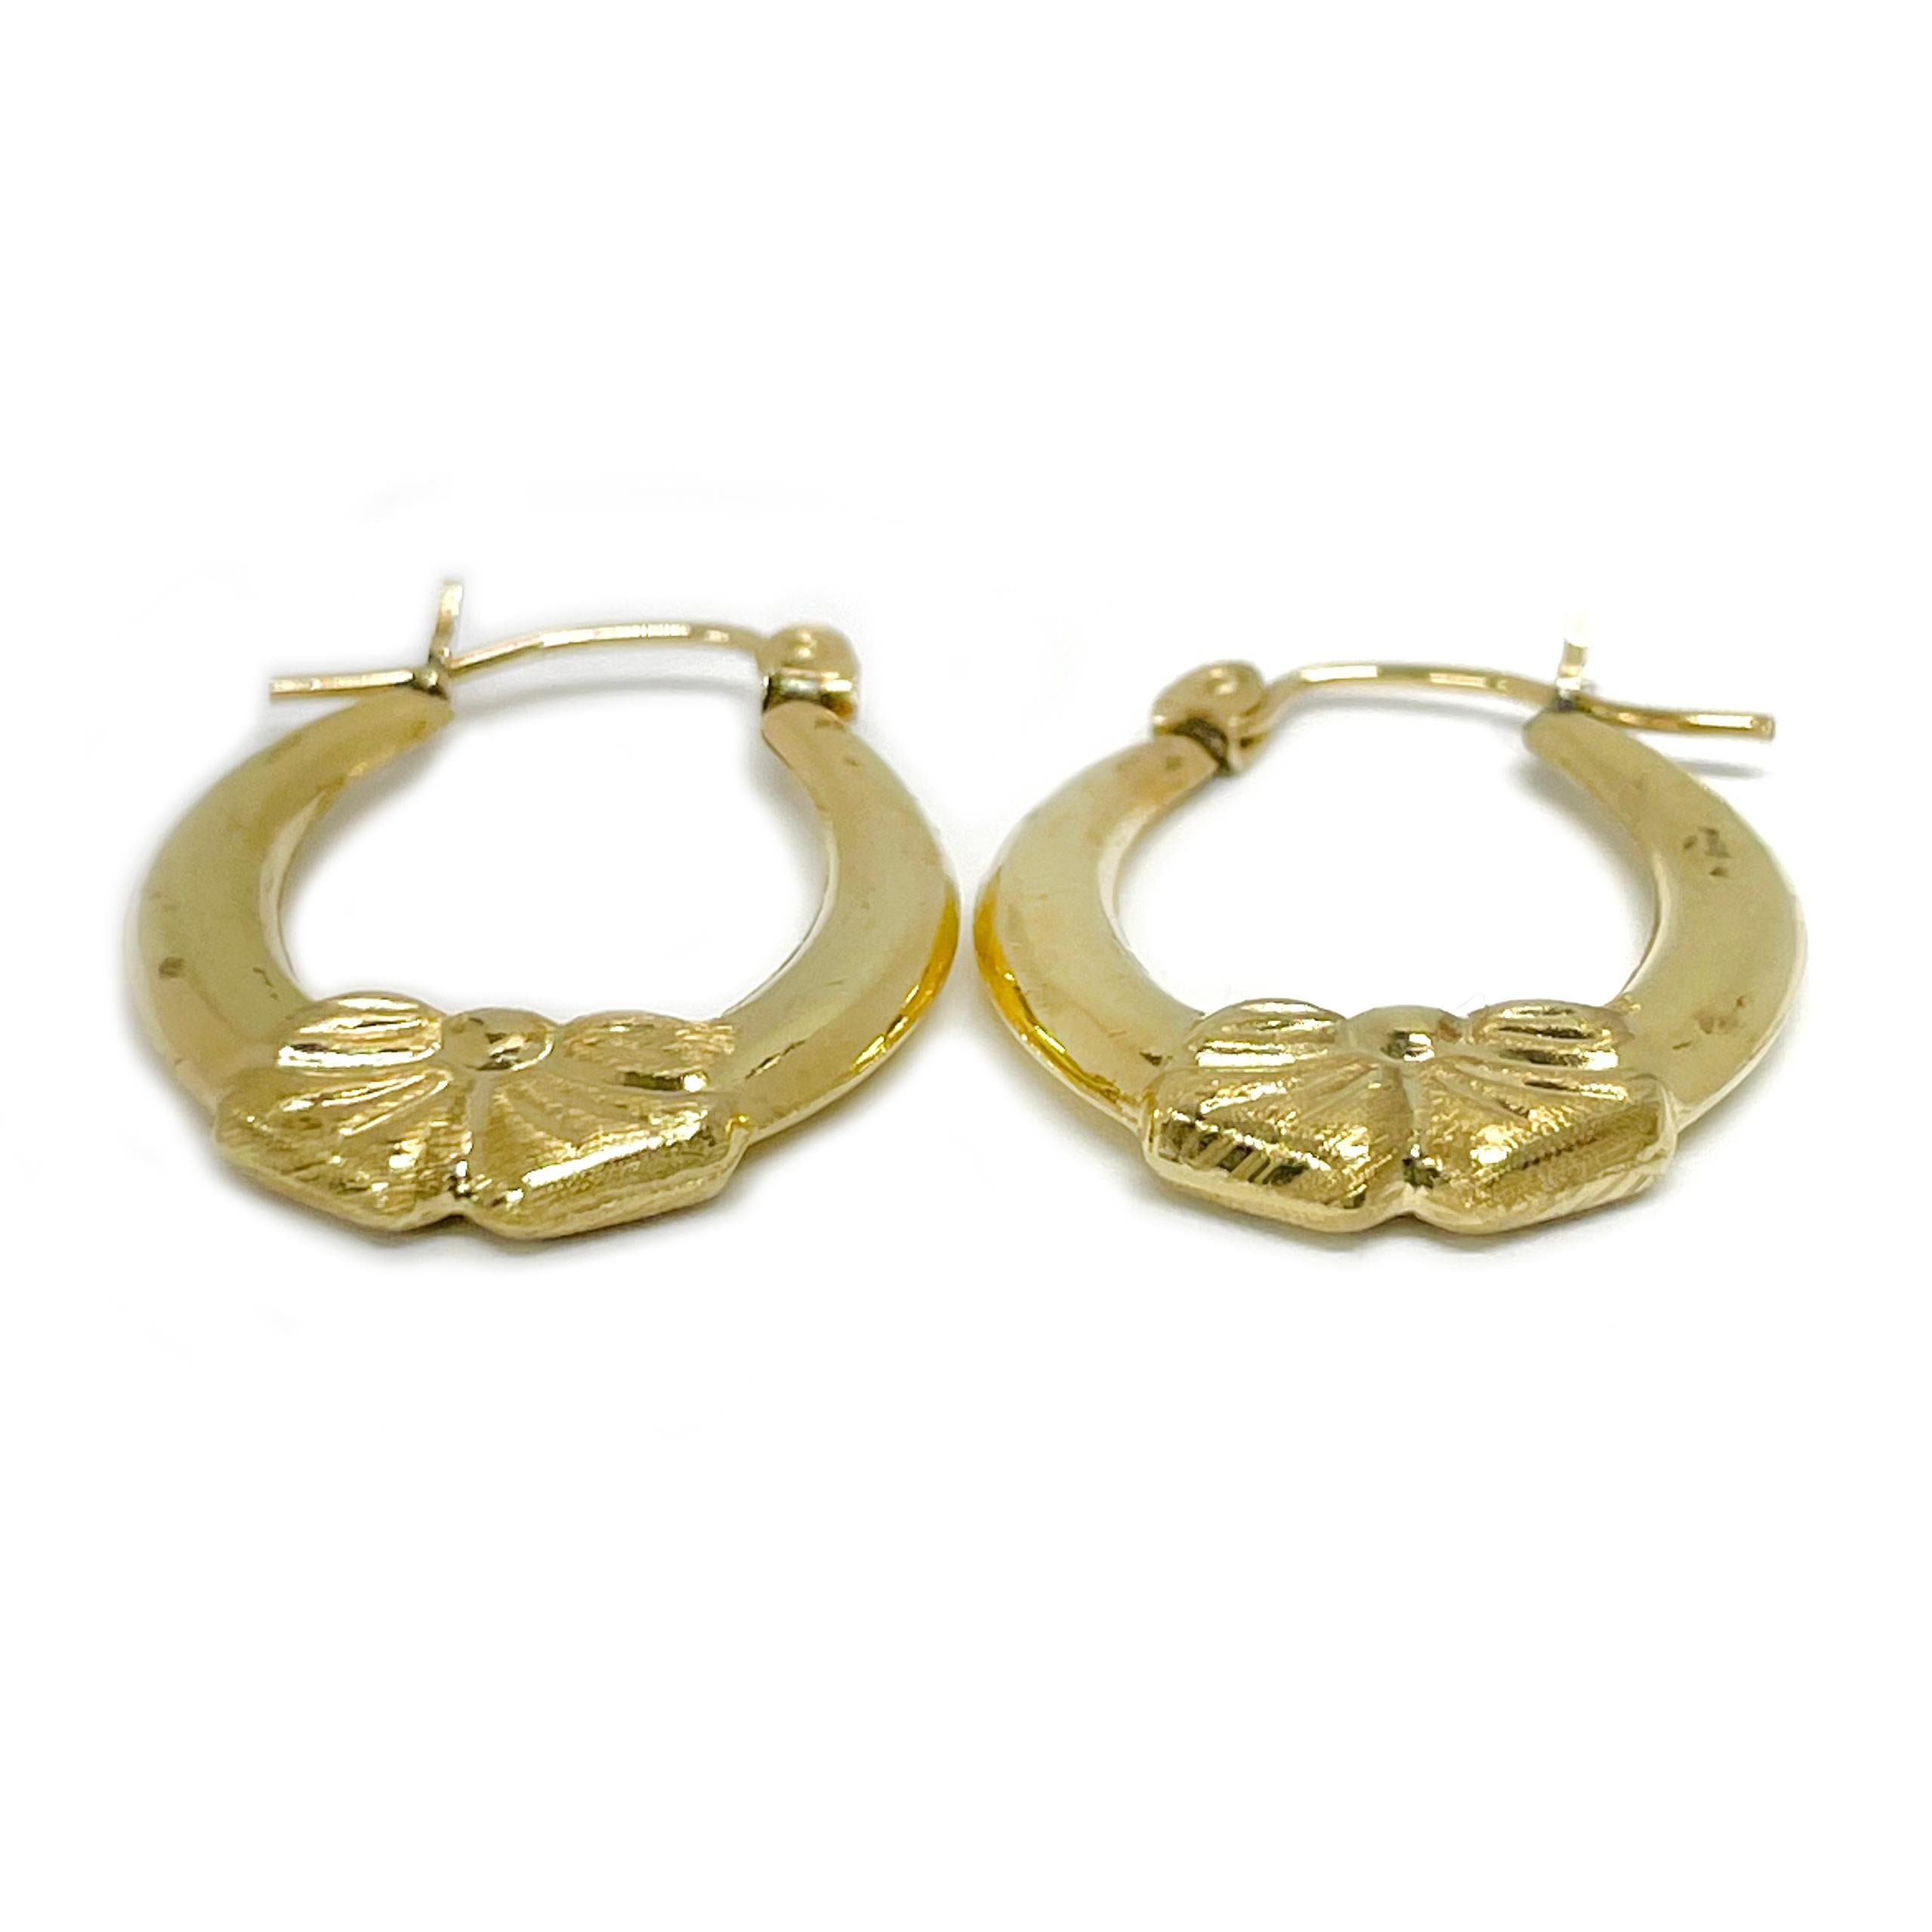 14 Karat Gelbgold Bow Hoop Earrings. Diese leichten, hohlen Reifen haben ein strukturiertes Schleifendetail am unteren Ende des Reifens und eine glatte, glänzende Oberfläche. Die Ohrringe sind 23 mm hoch und 18,6 mm breit. Die Ohrringe haben einen